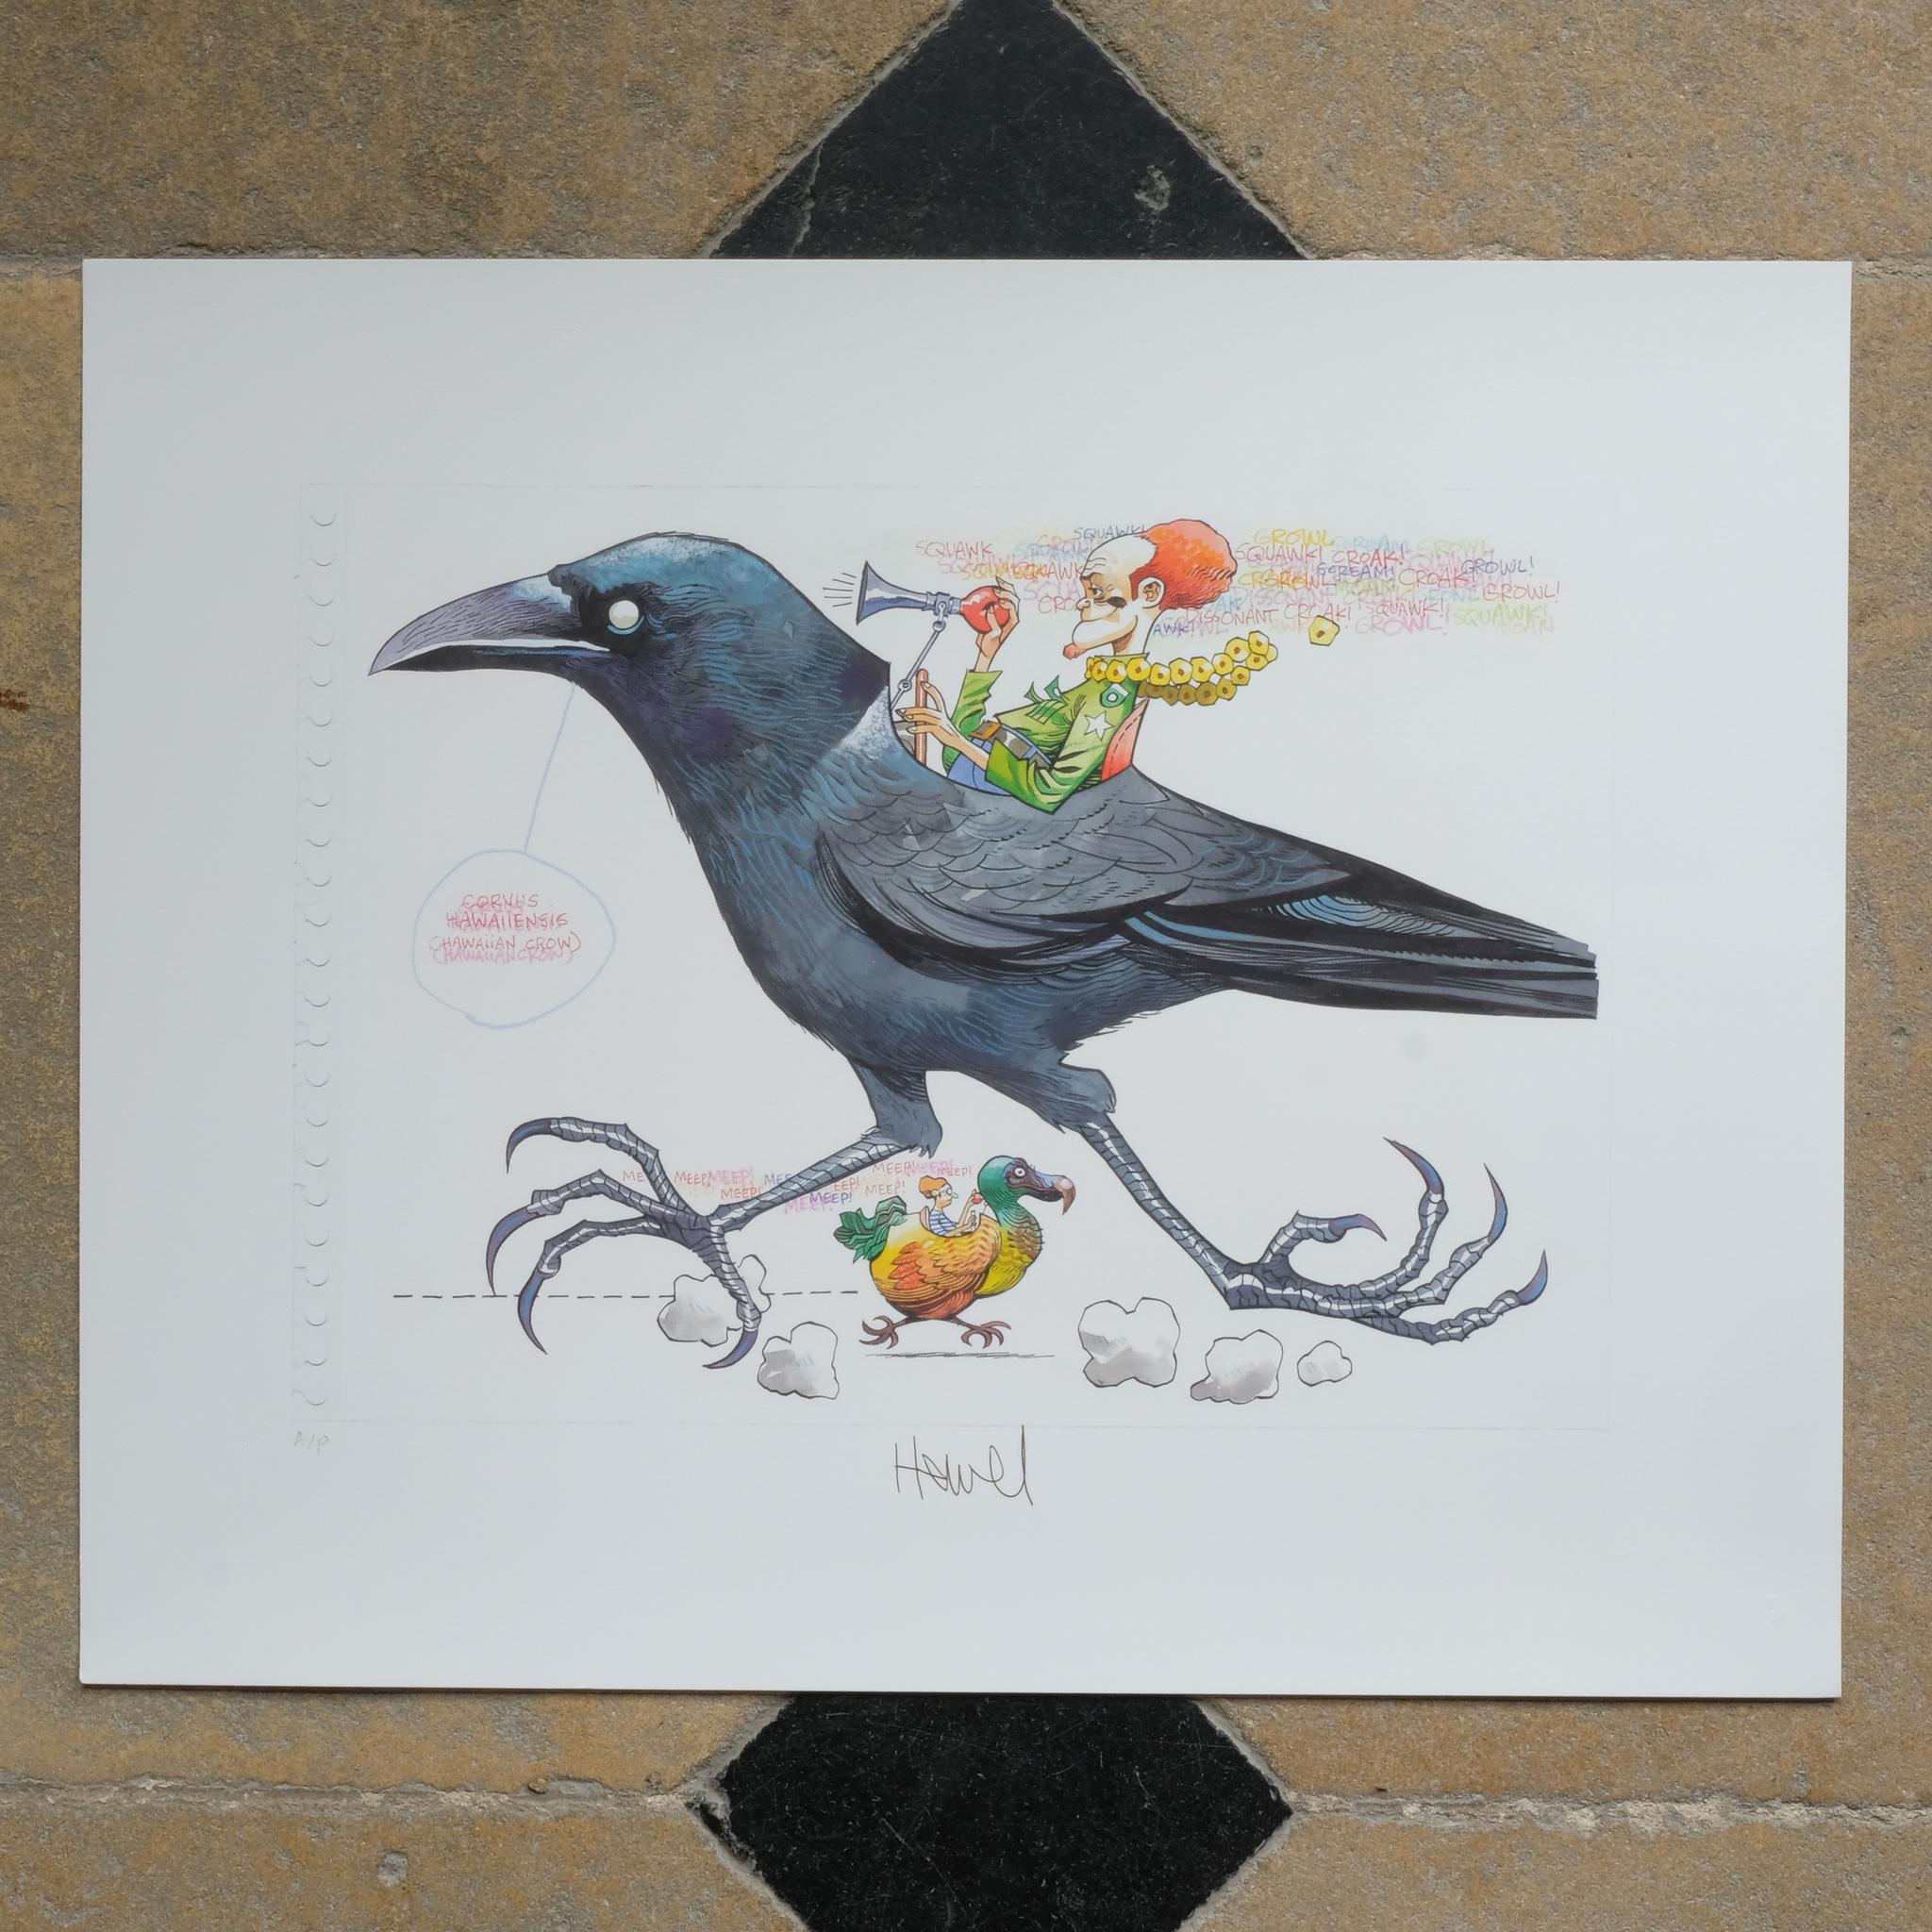 Farbgraphik, 2011, auf Somerset 330gsm Papier, signiert mit Bleistift, bezeichnet 'A/P' (ein Künstlerabzug außerhalb der Auflage von 125), aus dem Portfolio Ghosts of Gone Birds, gedruckt und herausgegeben von Jealous, London, das ganze Blatt, in